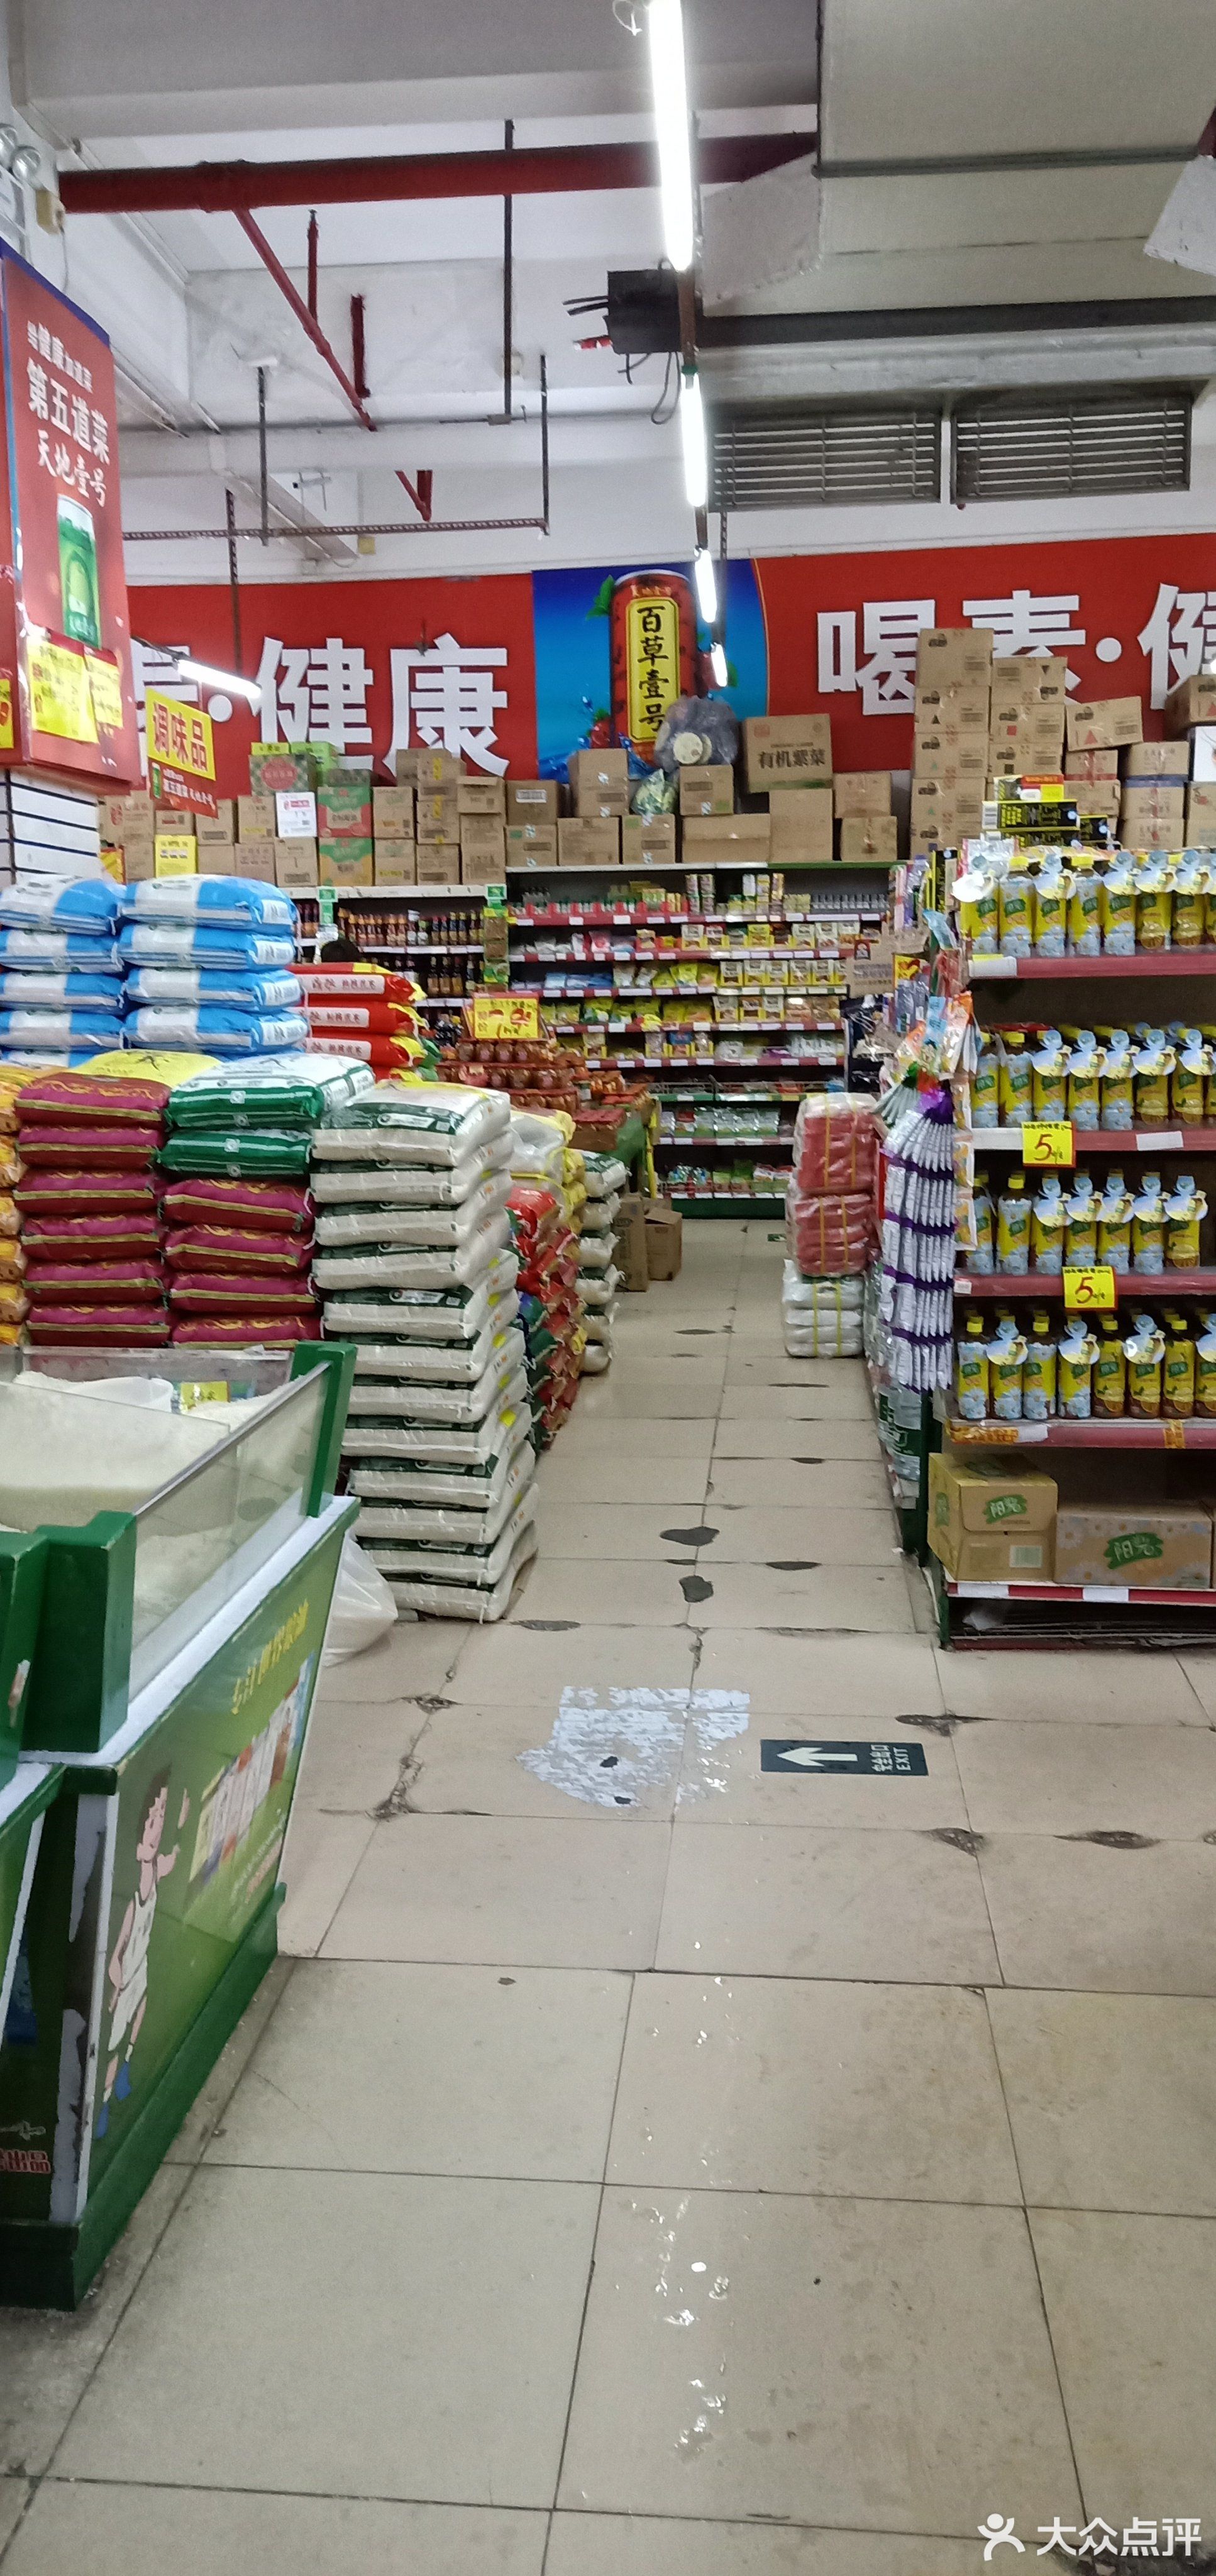 超市百佳超级市场(都市广场店)广州大型超市广州麦德龙超市广州精品